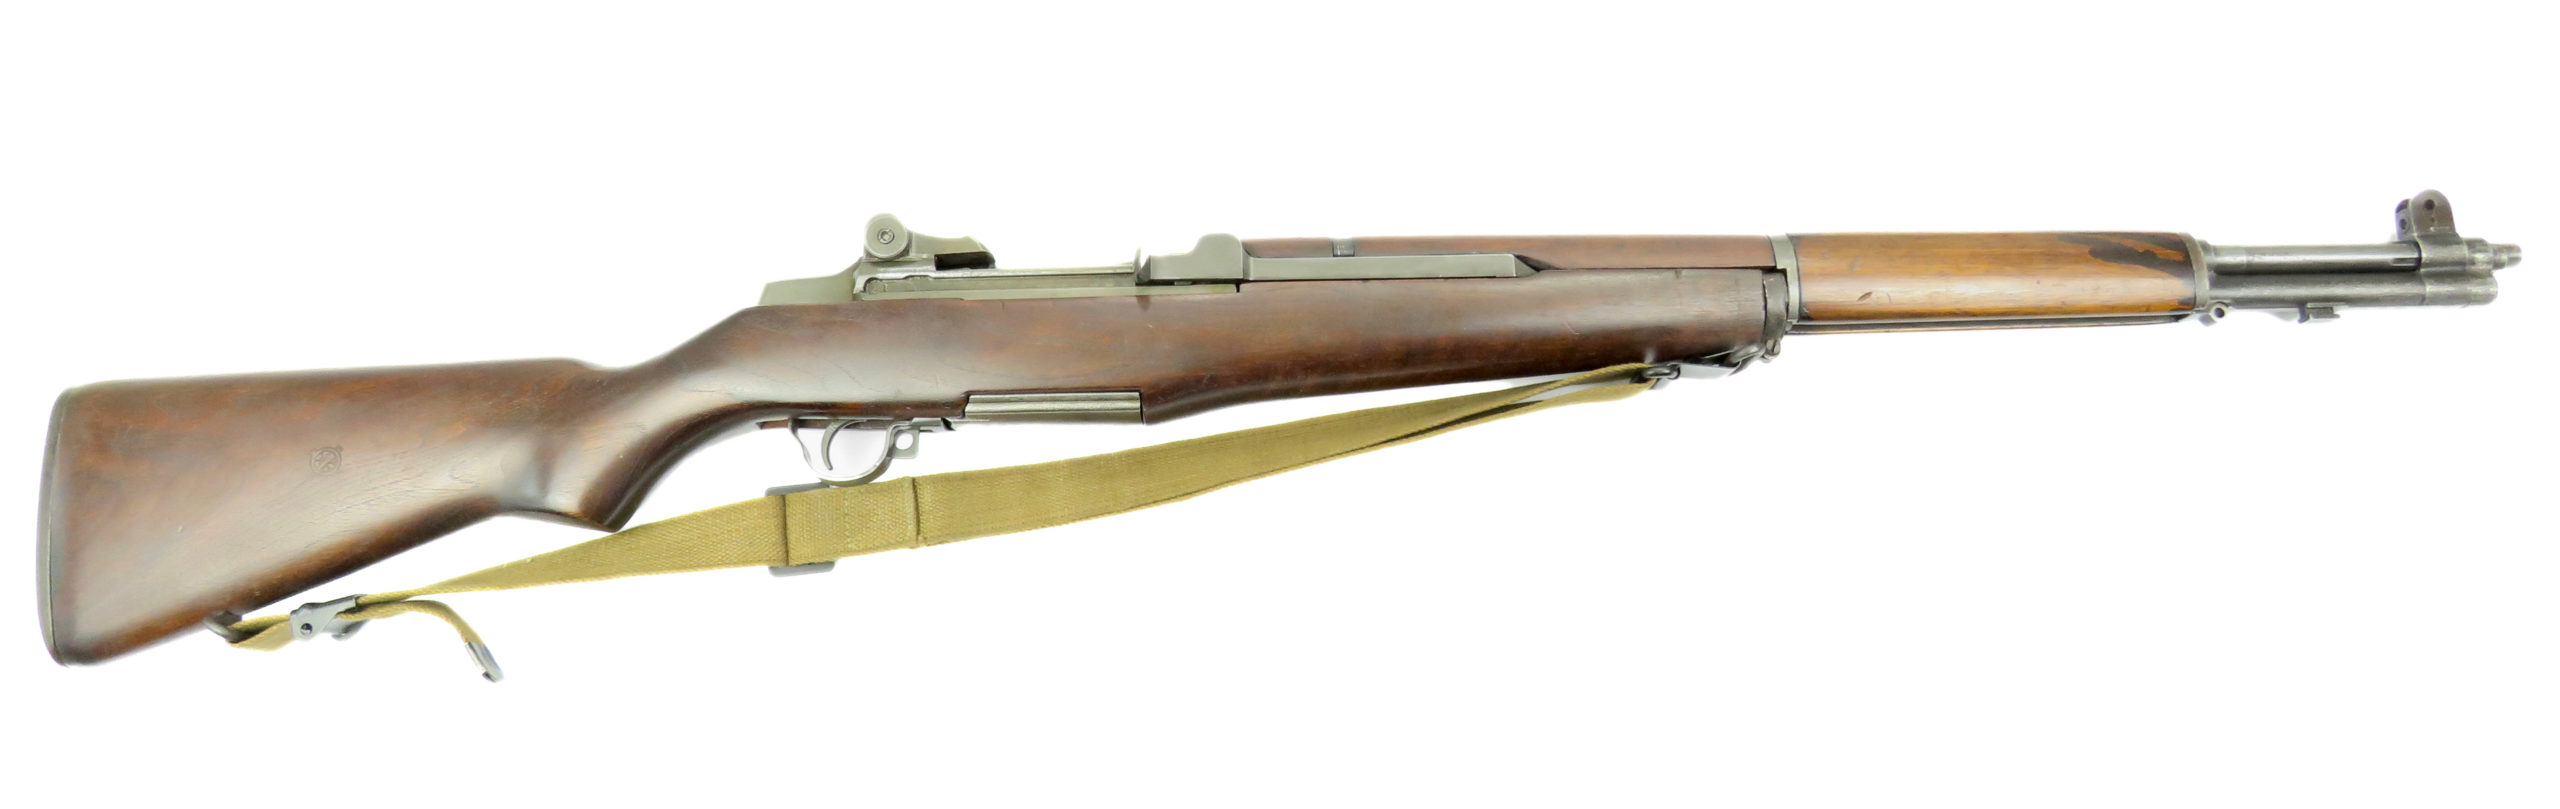 GARAND SPRINGFIELD Armory M1 calibre .30-06